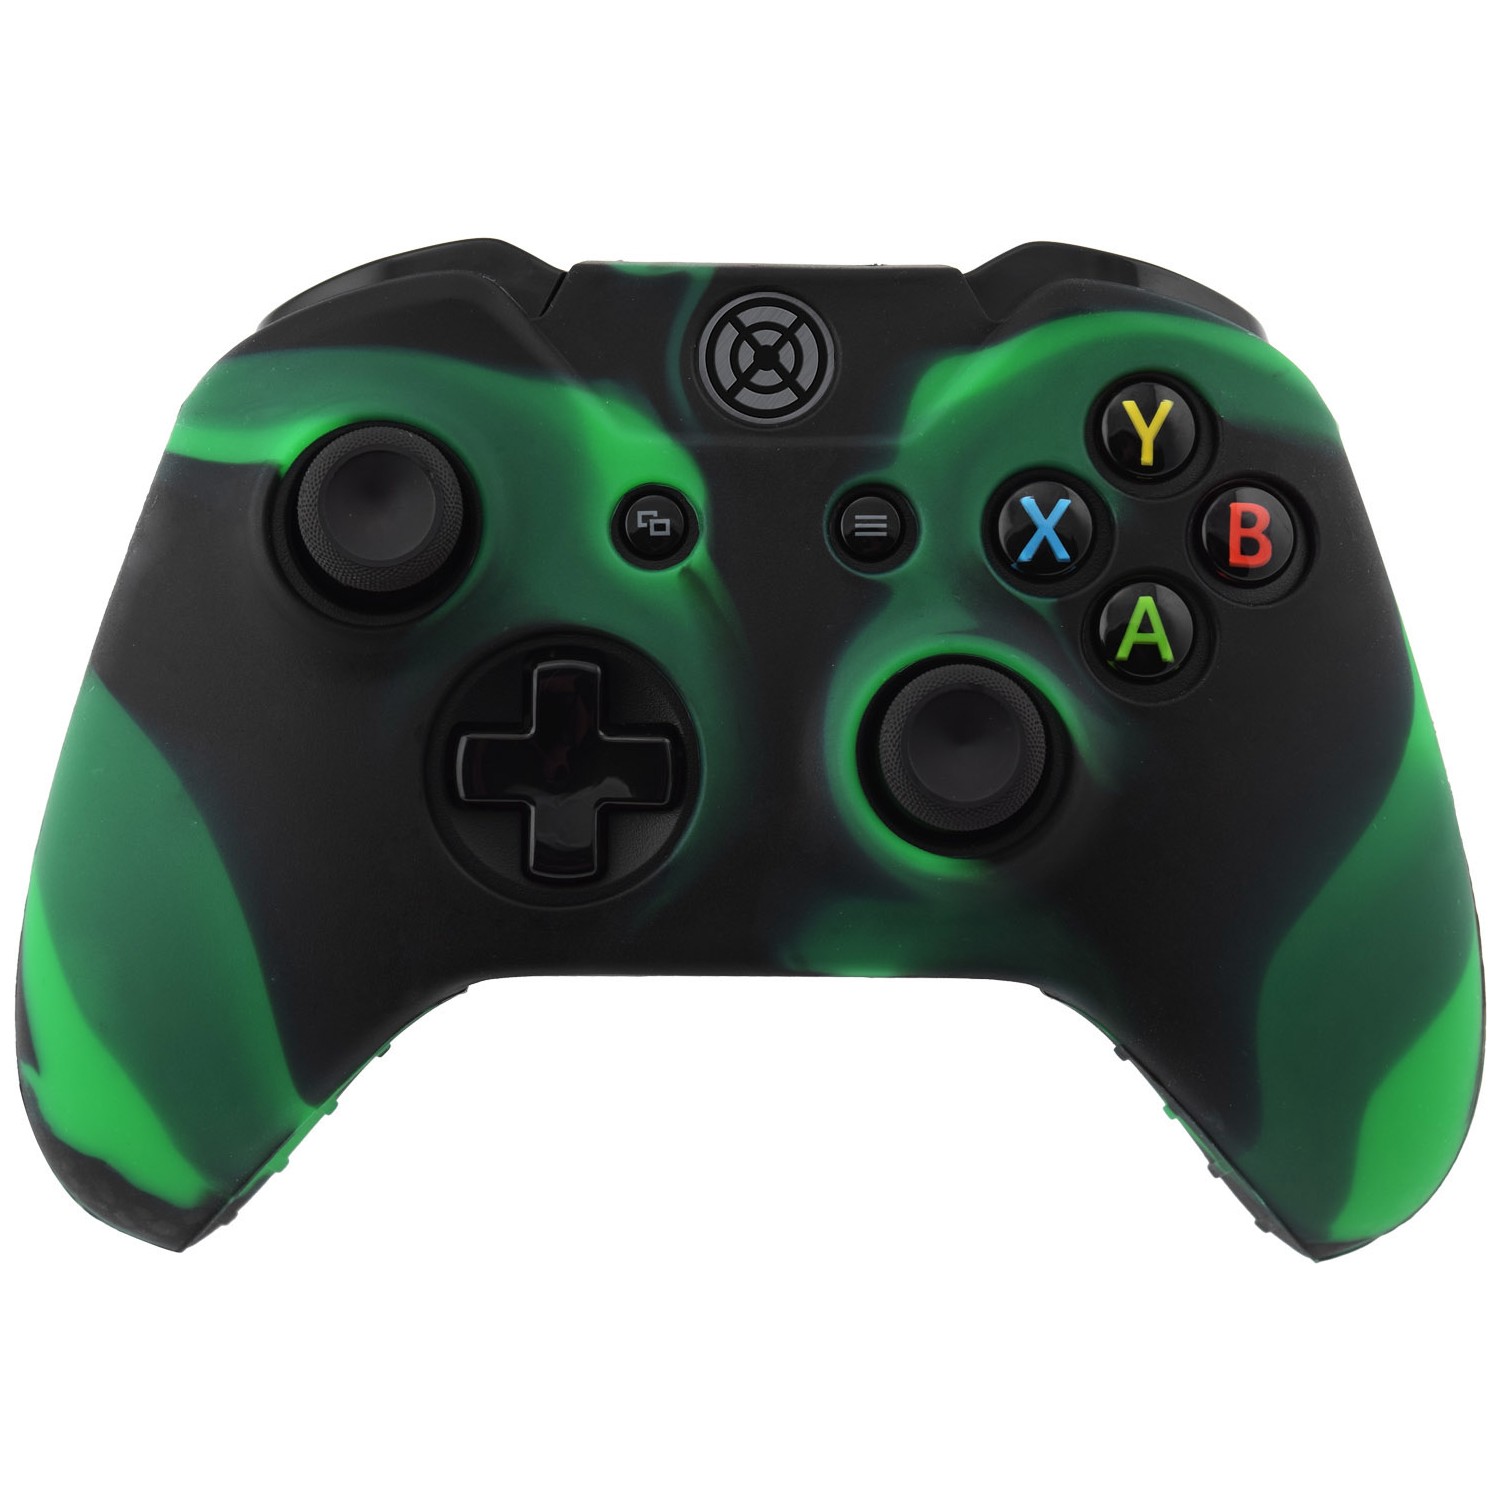 Зеленый джойстик. Беспроводной геймпад Xbox 360 зеленый. Xbox 1 Gamepad. Геймпад Xbox one. Xbox Controller зеленый.